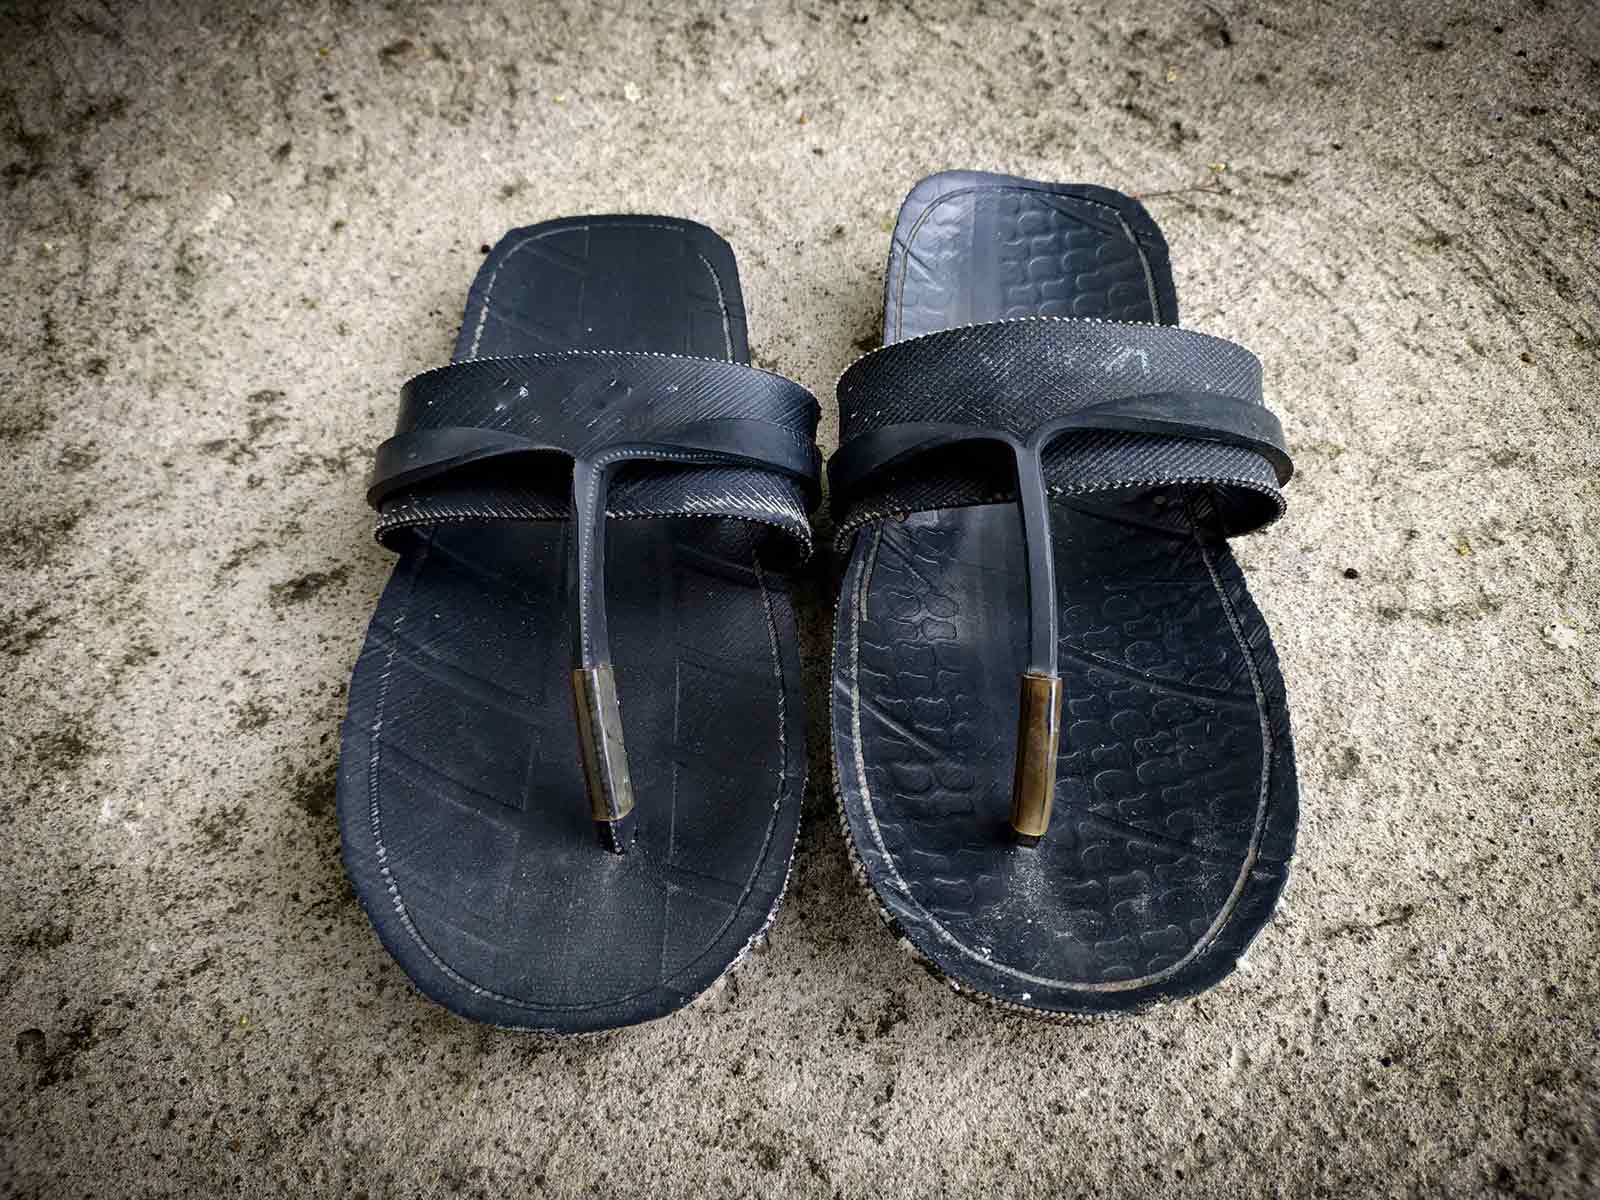 Footwear (sandals)